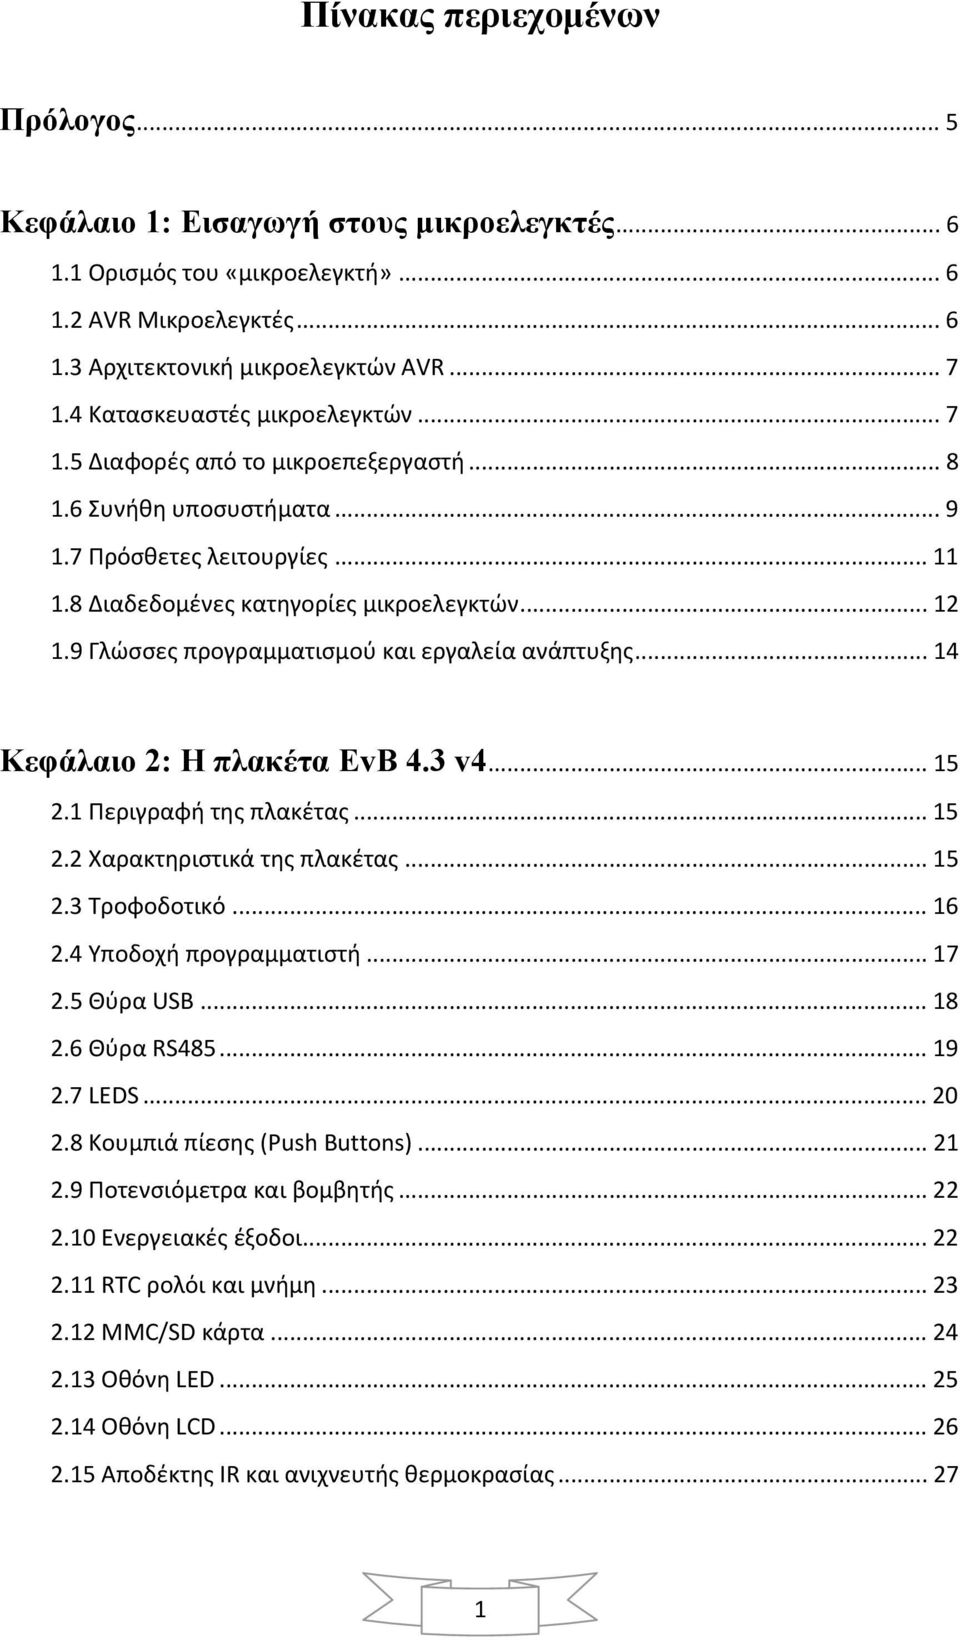 9 Γλώσσες προγραμματισμού και εργαλεία ανάπτυξης... 14 Κεφάλαιο 2: Η πλακέτα EvB 4.3 v4... 15 2.1 Περιγραφή της πλακέτας... 15 2.2 Χαρακτηριστικά της πλακέτας... 15 2.3 Τροφοδοτικό... 16 2.